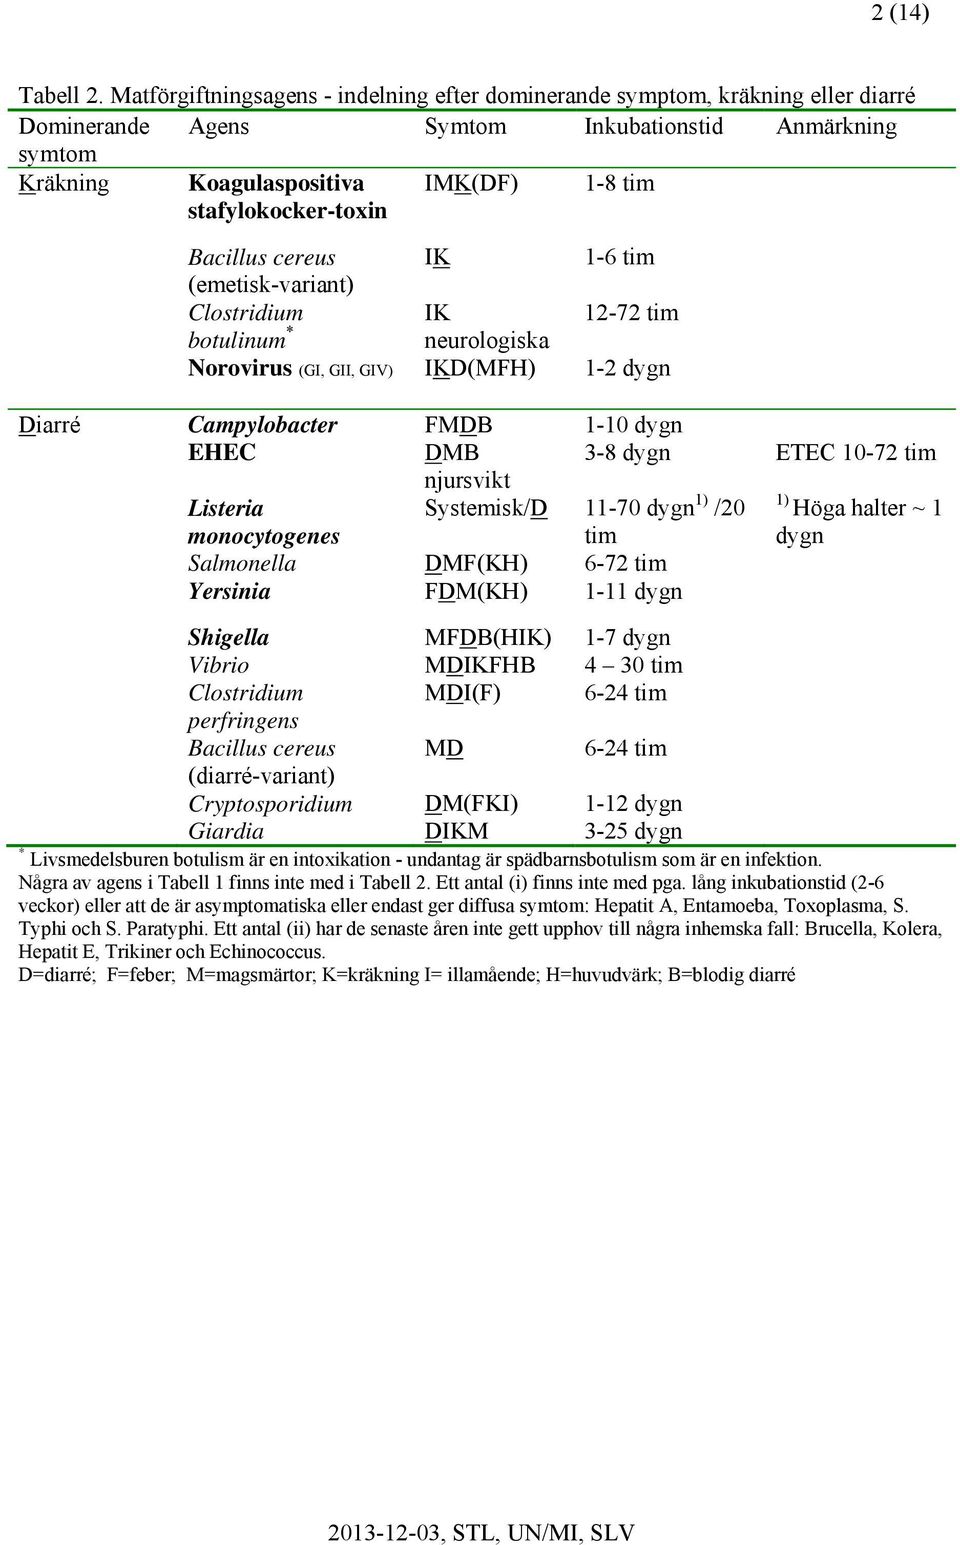 tim Bacillus cereus IK 1-6 tim (emetisk-variant) Clostridium IK 12-72 tim botulinum * neurologiska Norovirus (GI, GII, GIV) IKD(MFH) 1-2 dygn Diarré Campylobacter FMDB 1-10 dygn EHEC DMB 3-8 dygn